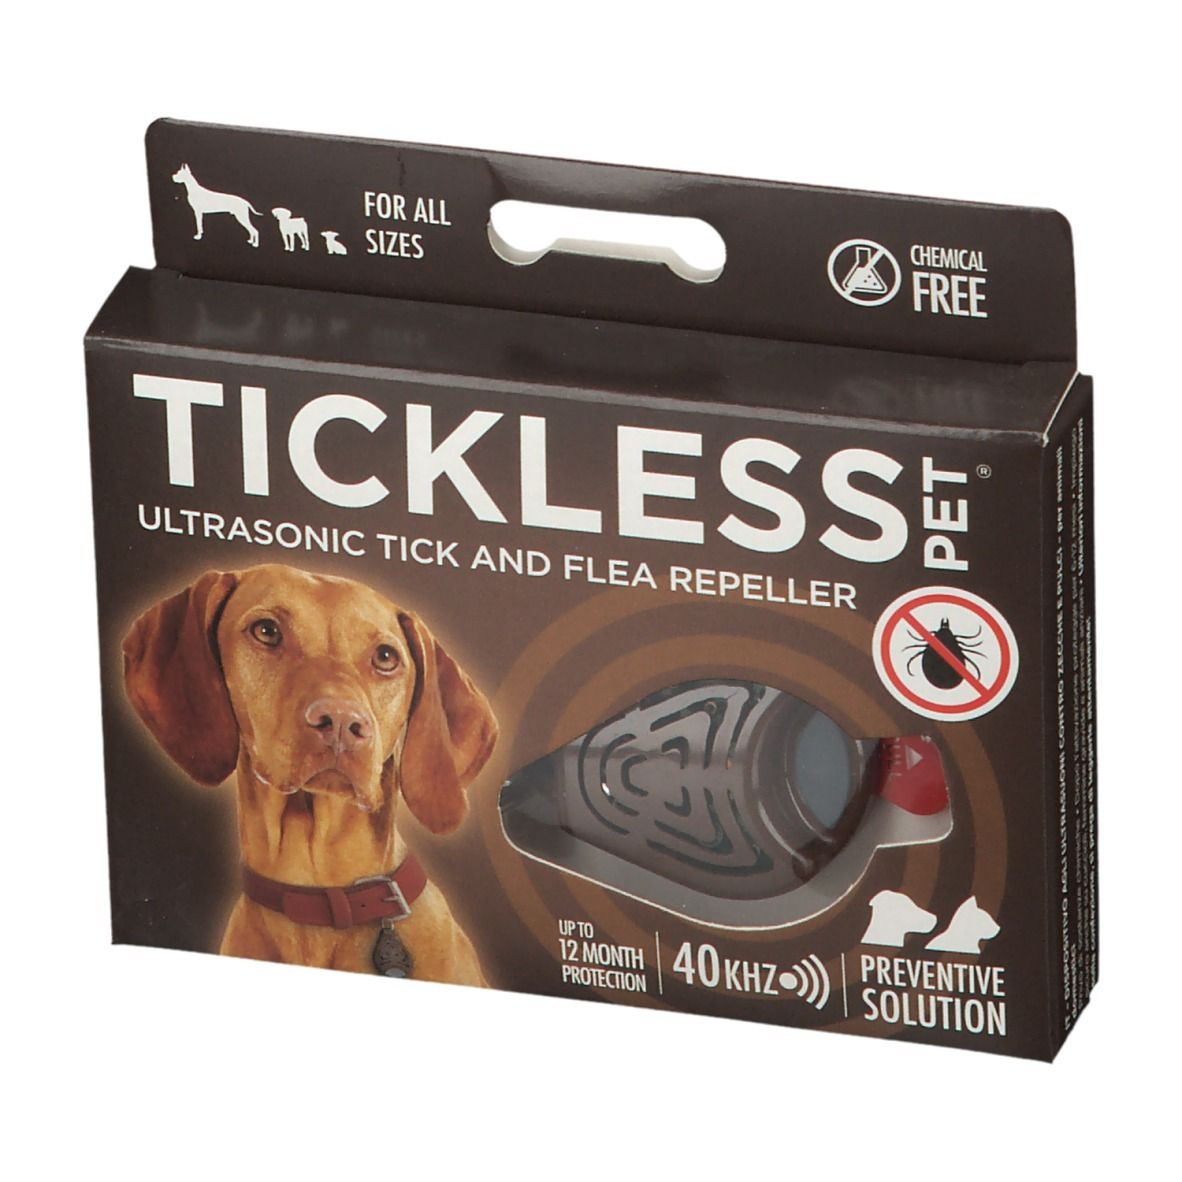 Tickless Pet® Appareil ultrason repousse tiques et puces - Brun